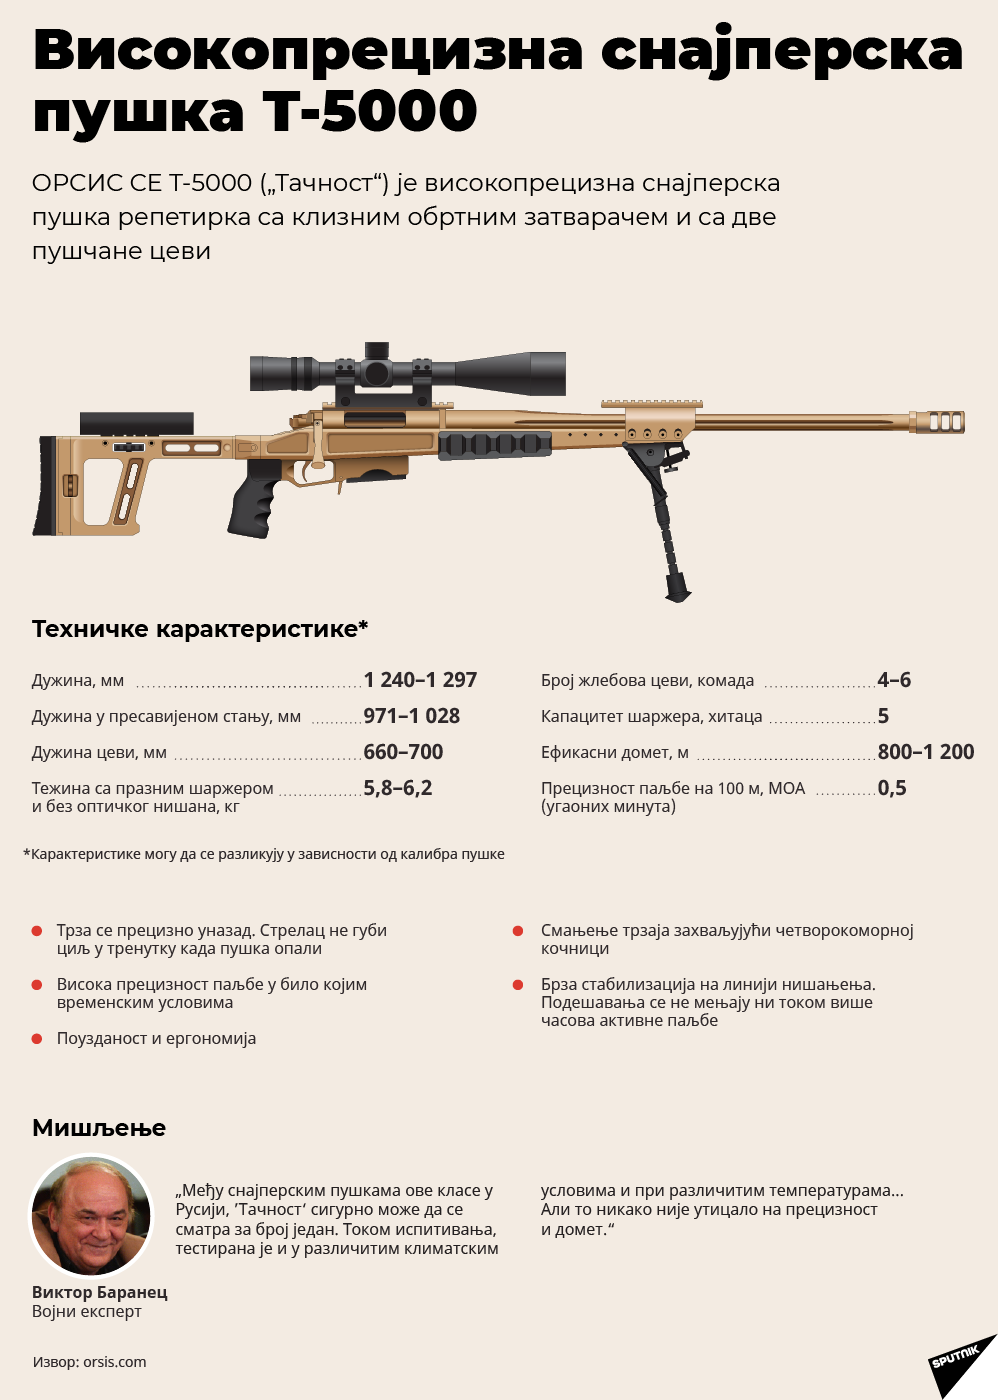 Cнајперска пушка Т-5000 „Тачност“ - Sputnik Србија